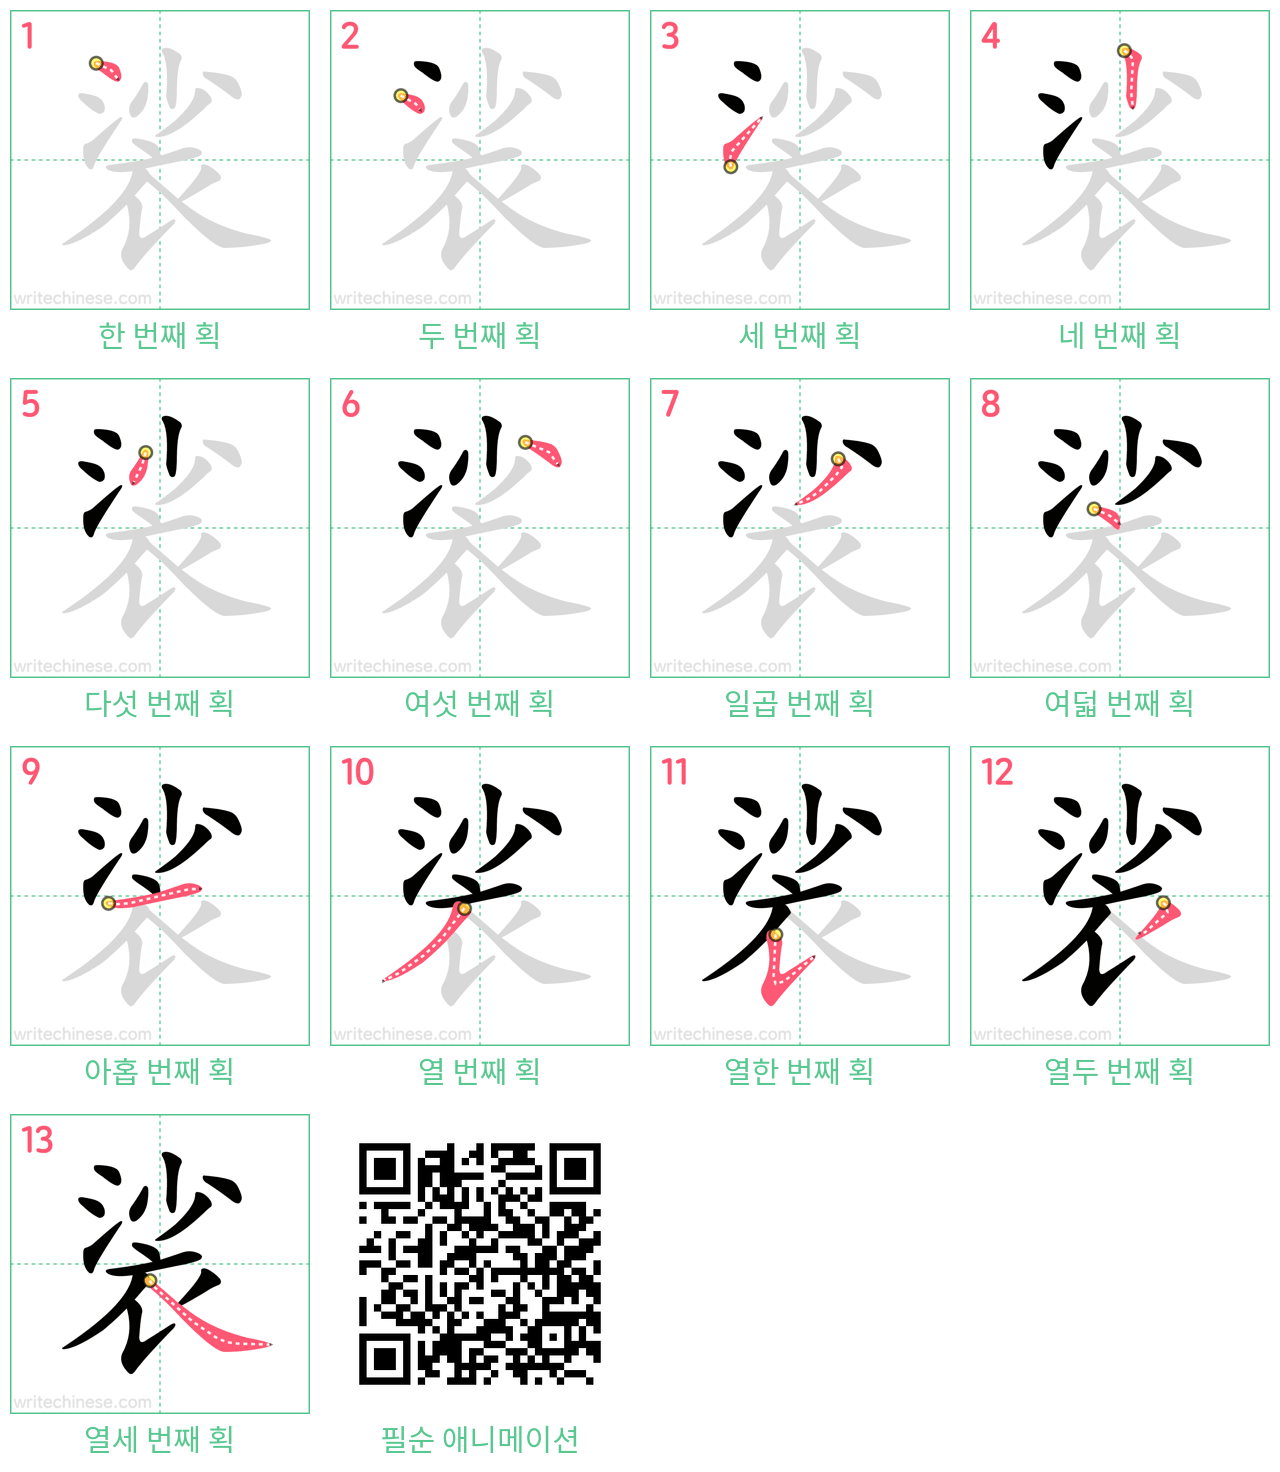 裟 step-by-step stroke order diagrams